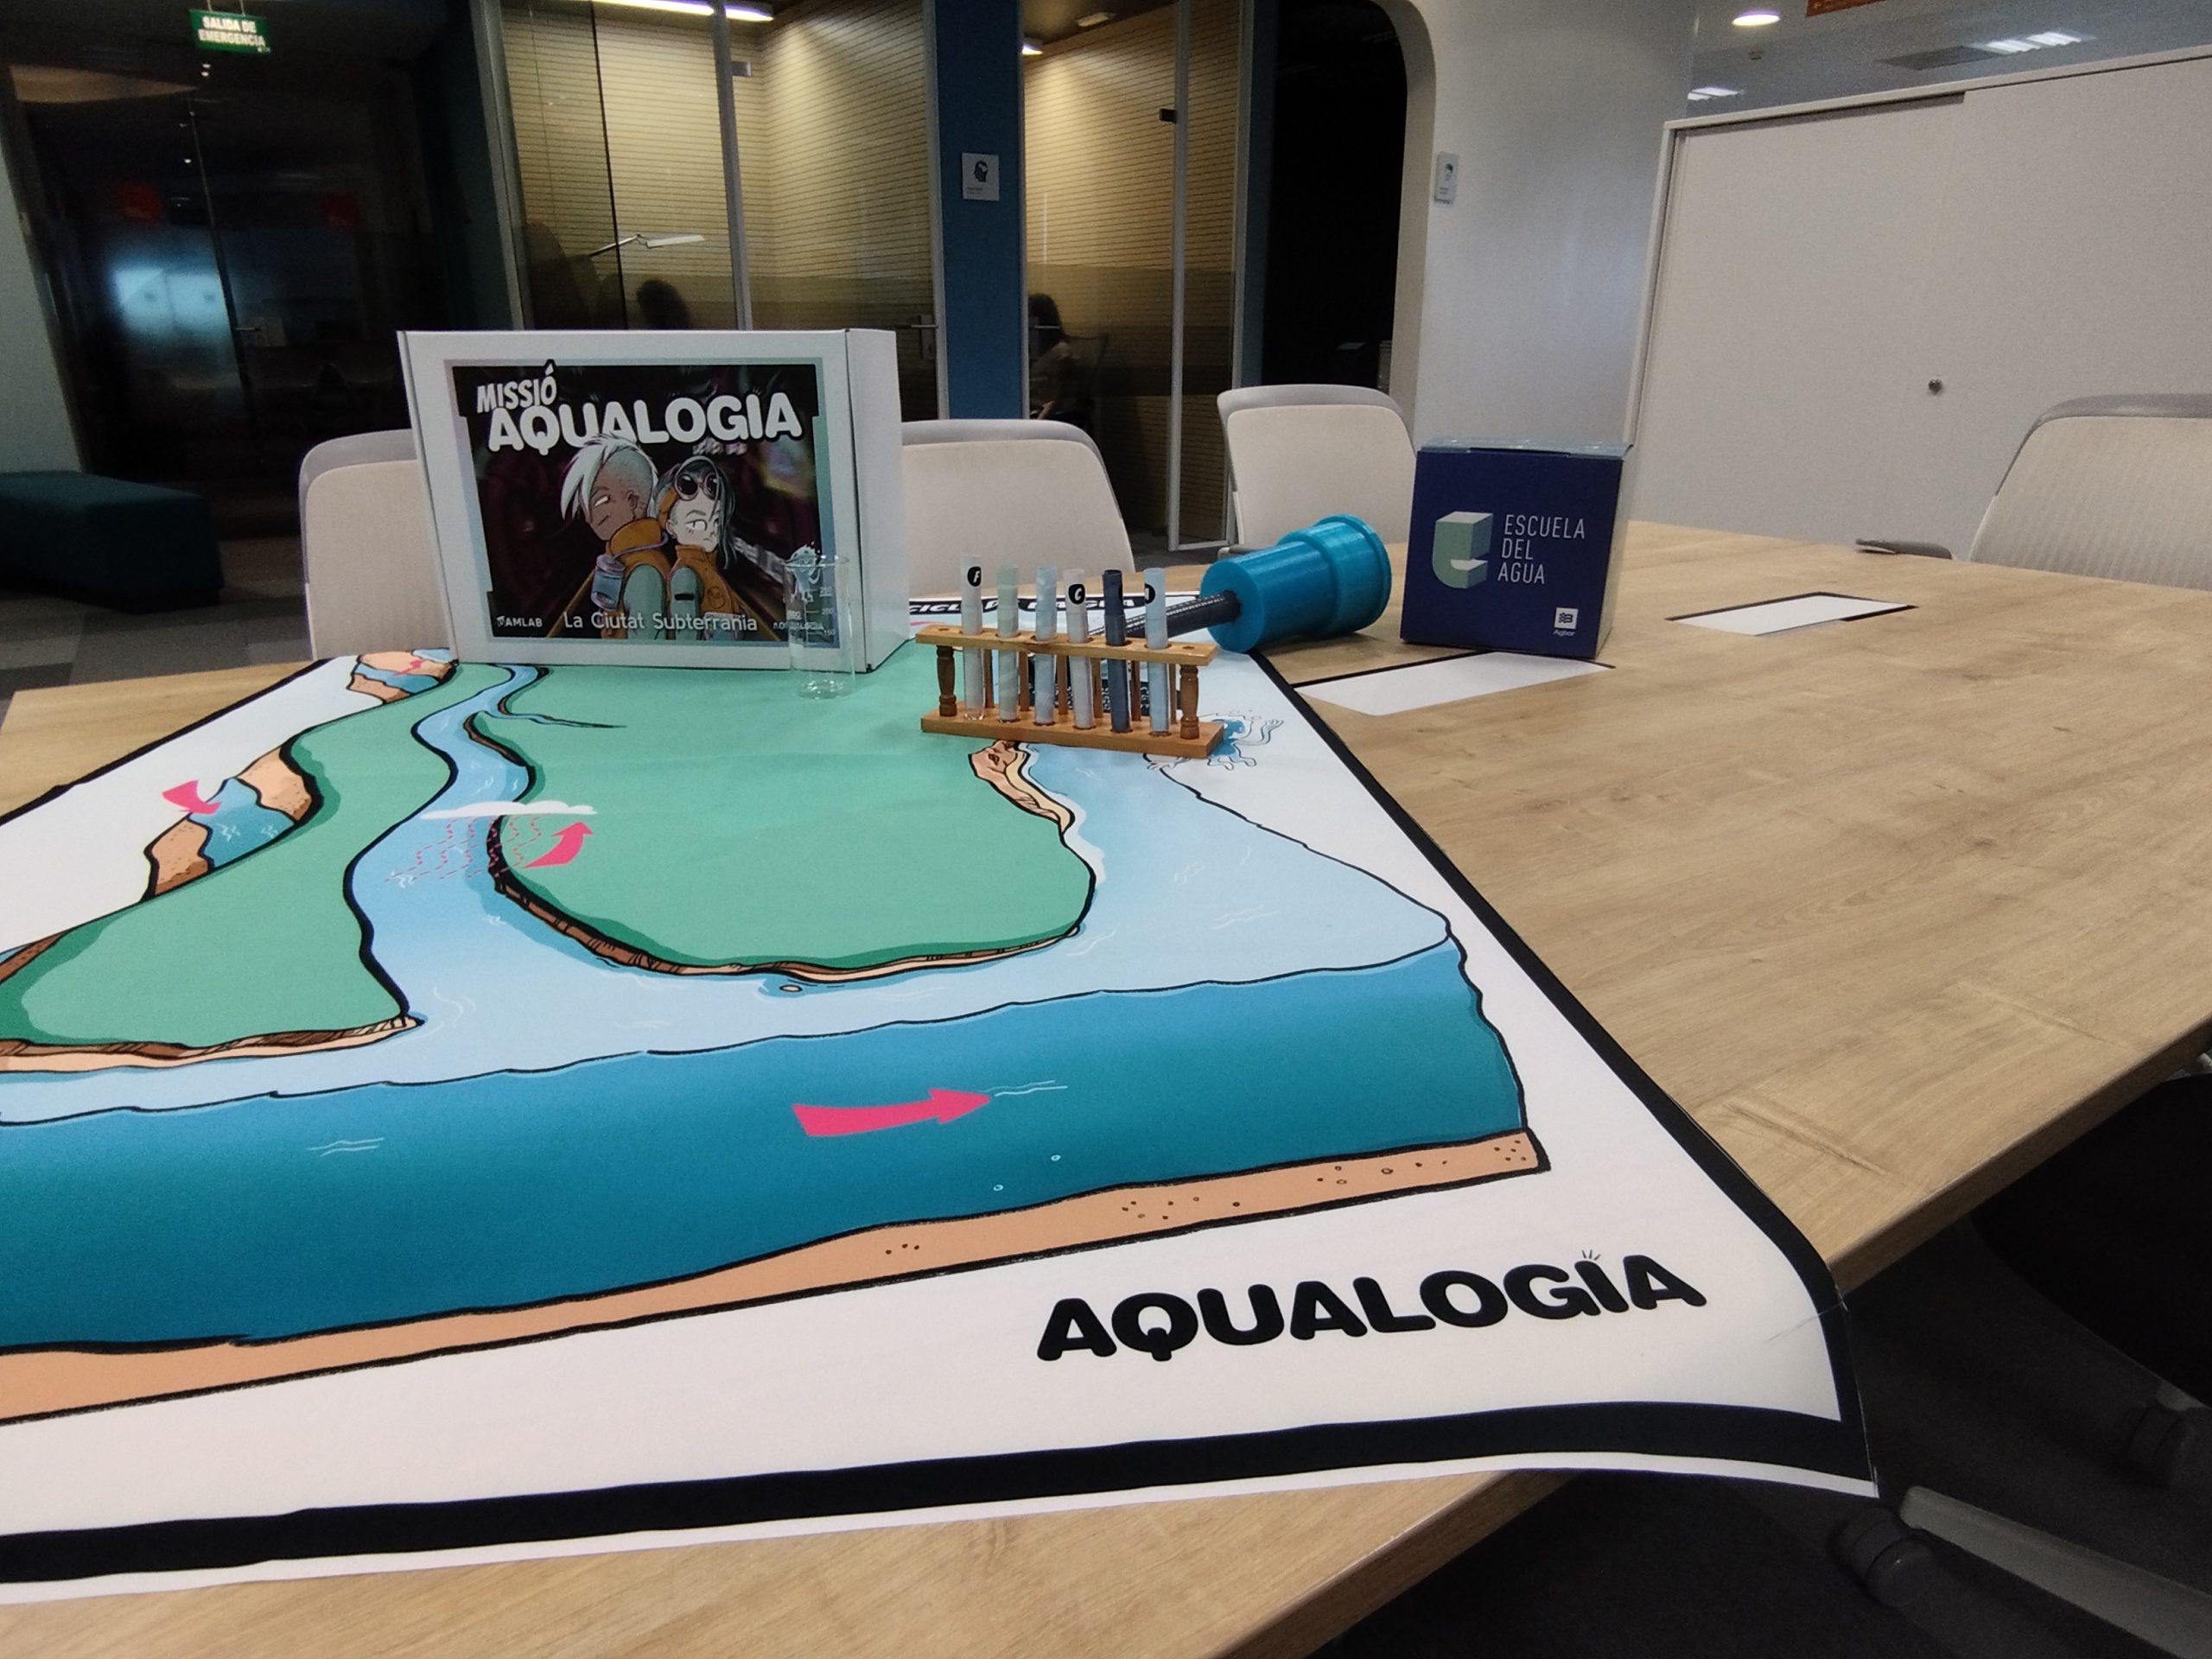 Aqualogia lanza los Aquakits: Cajas pedagógicas innovadoras para enseñar el ciclo del agua